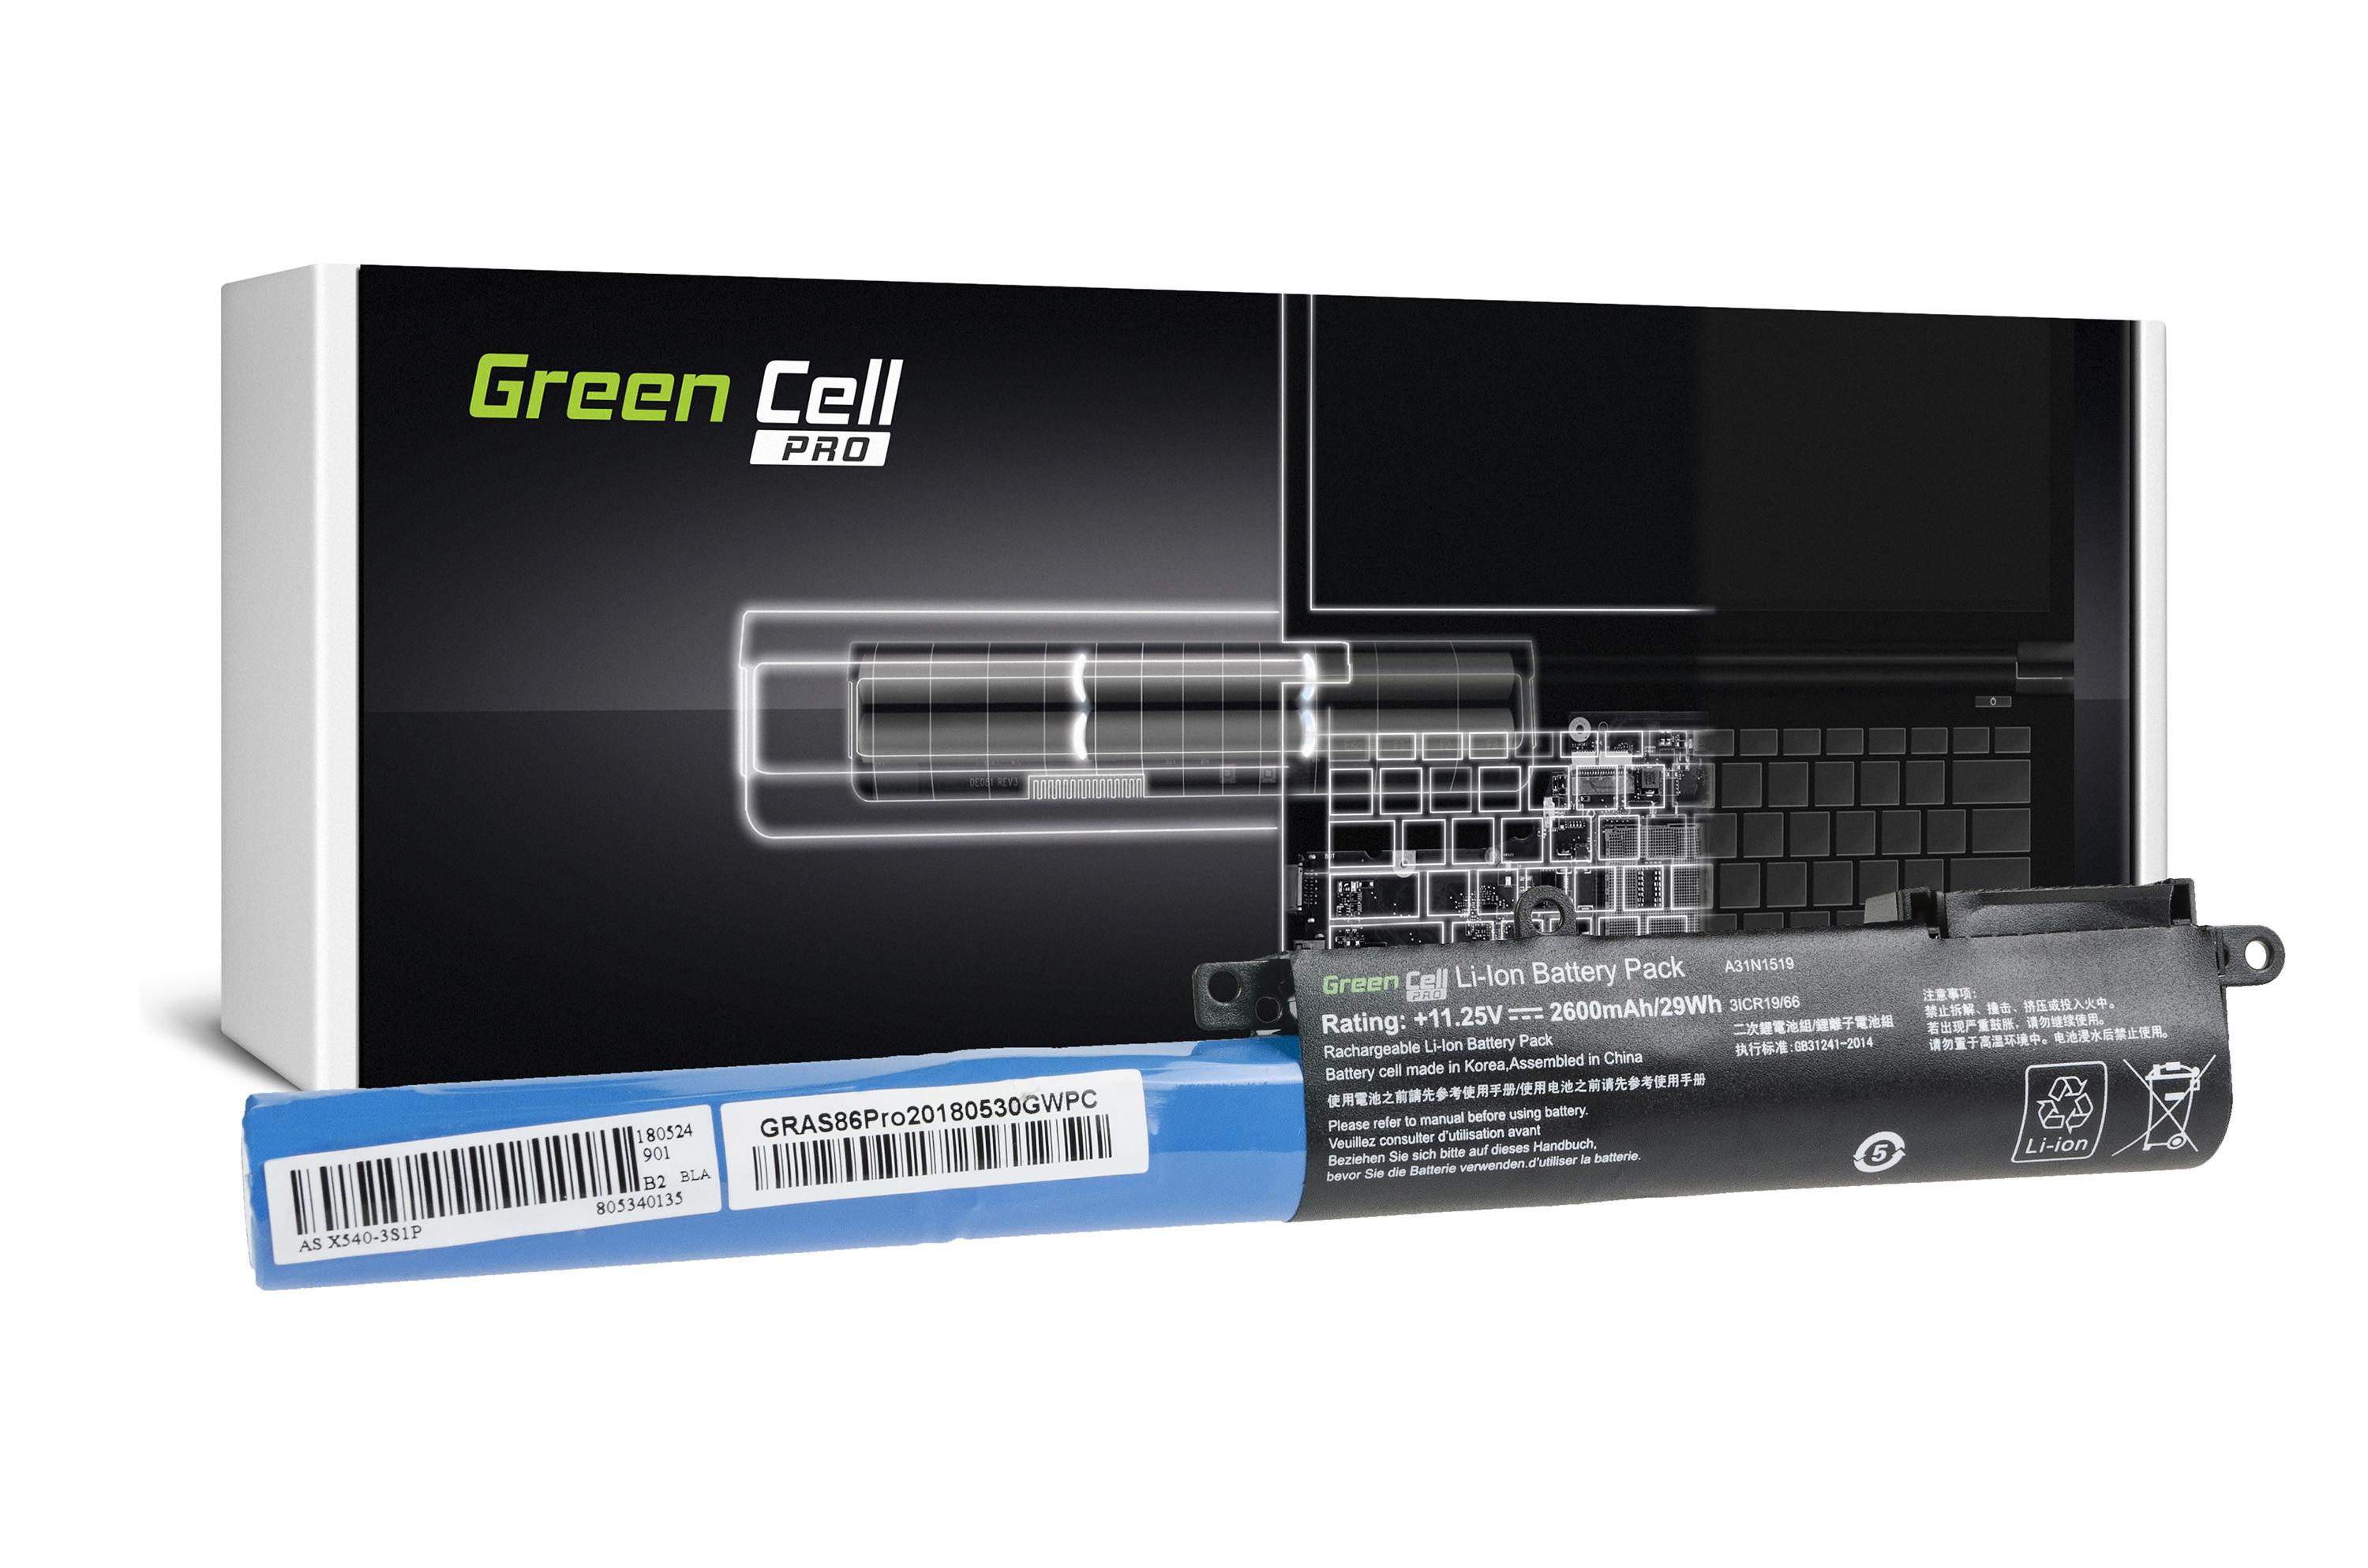 Green Cell Baterie PRO A31N1519 pro Asus F540 F540L F540S R540 R540L R540M R540MA R540S R540SA X540 X540L X540S X540SA AS86PRO